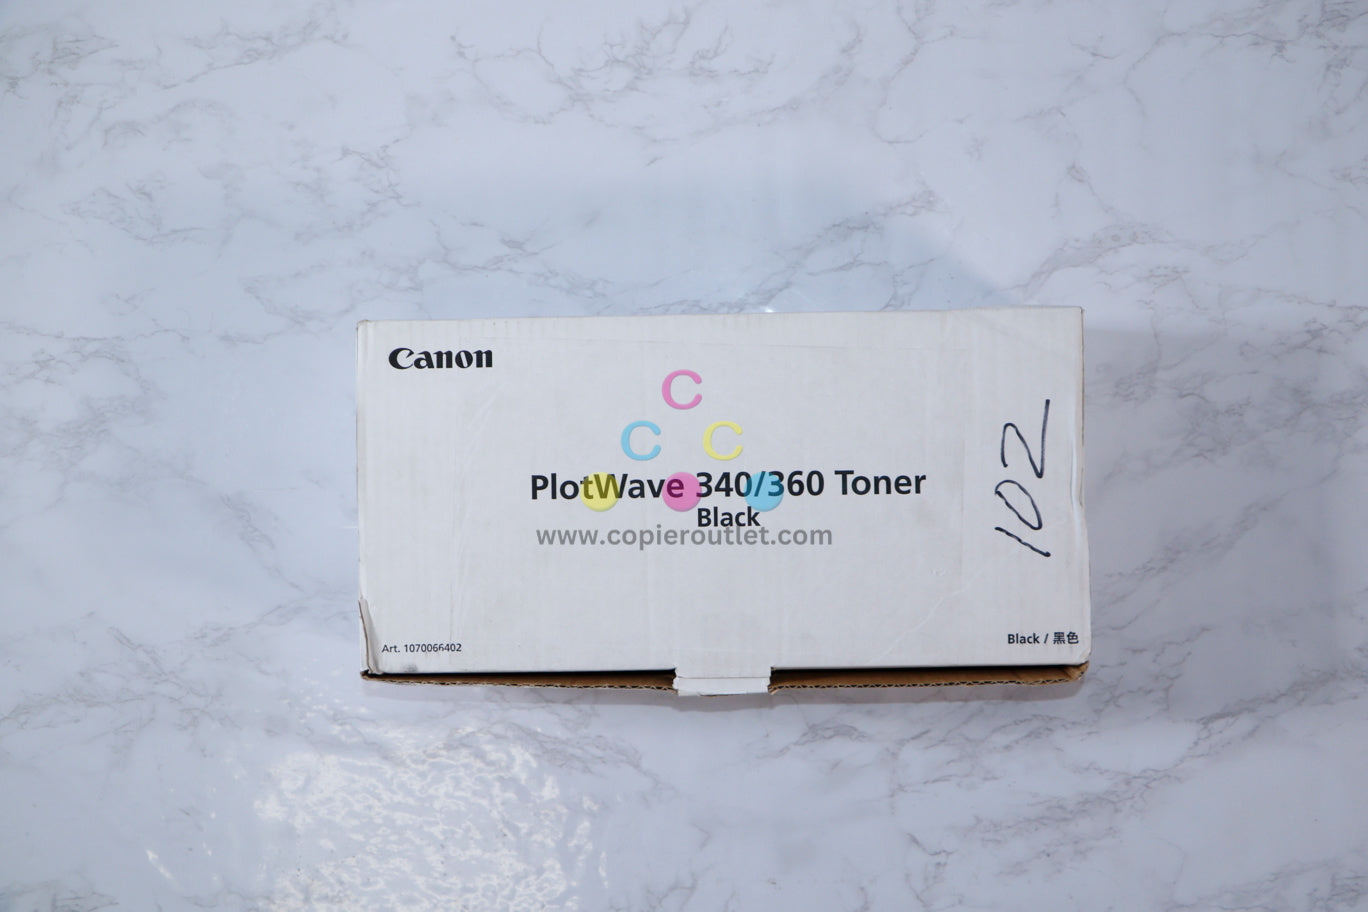 Canon PlotWave 340/360 Black Toner Art.1070066402 (1 BOTTLE ONLY)